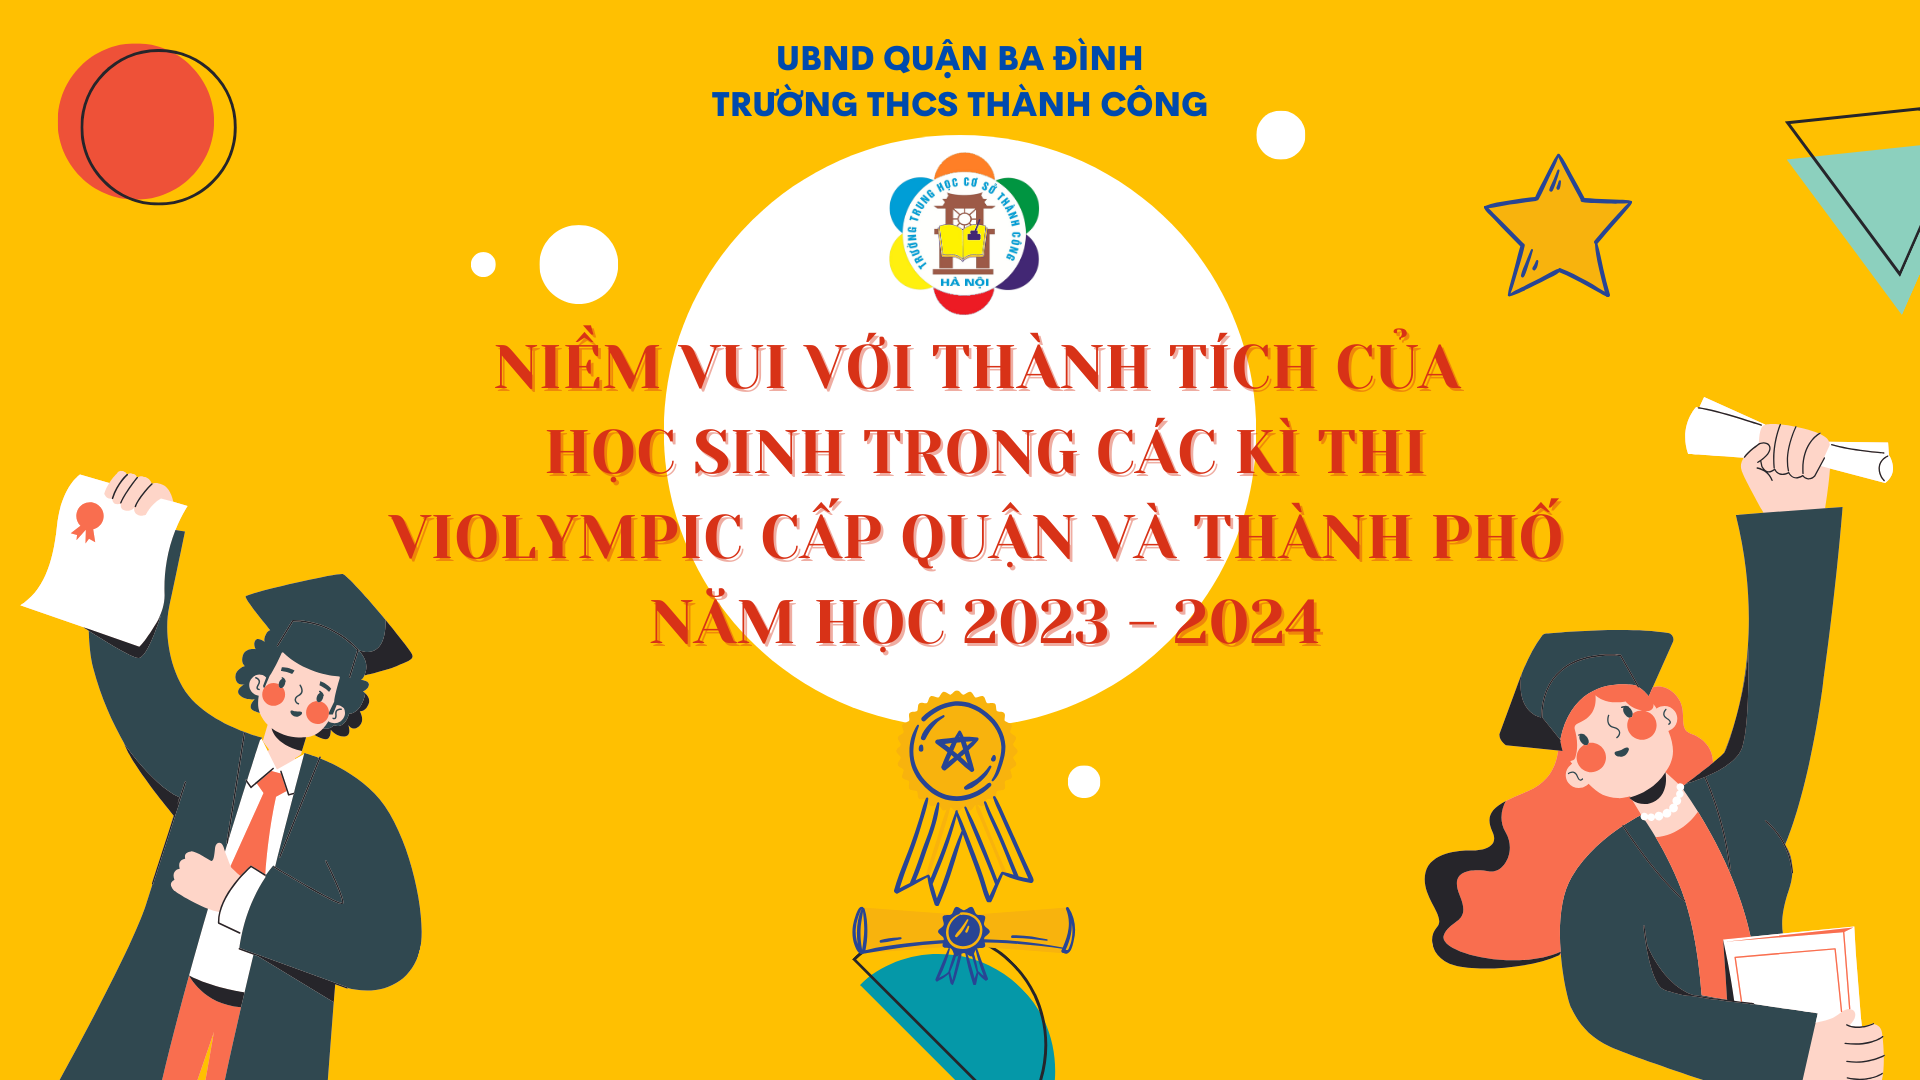 Niềm vui của thầy trò trường THCS Thành Công  trong kì thi ViOlympic cấp Quận và cấp Thành phố năm học 2023 - 2024